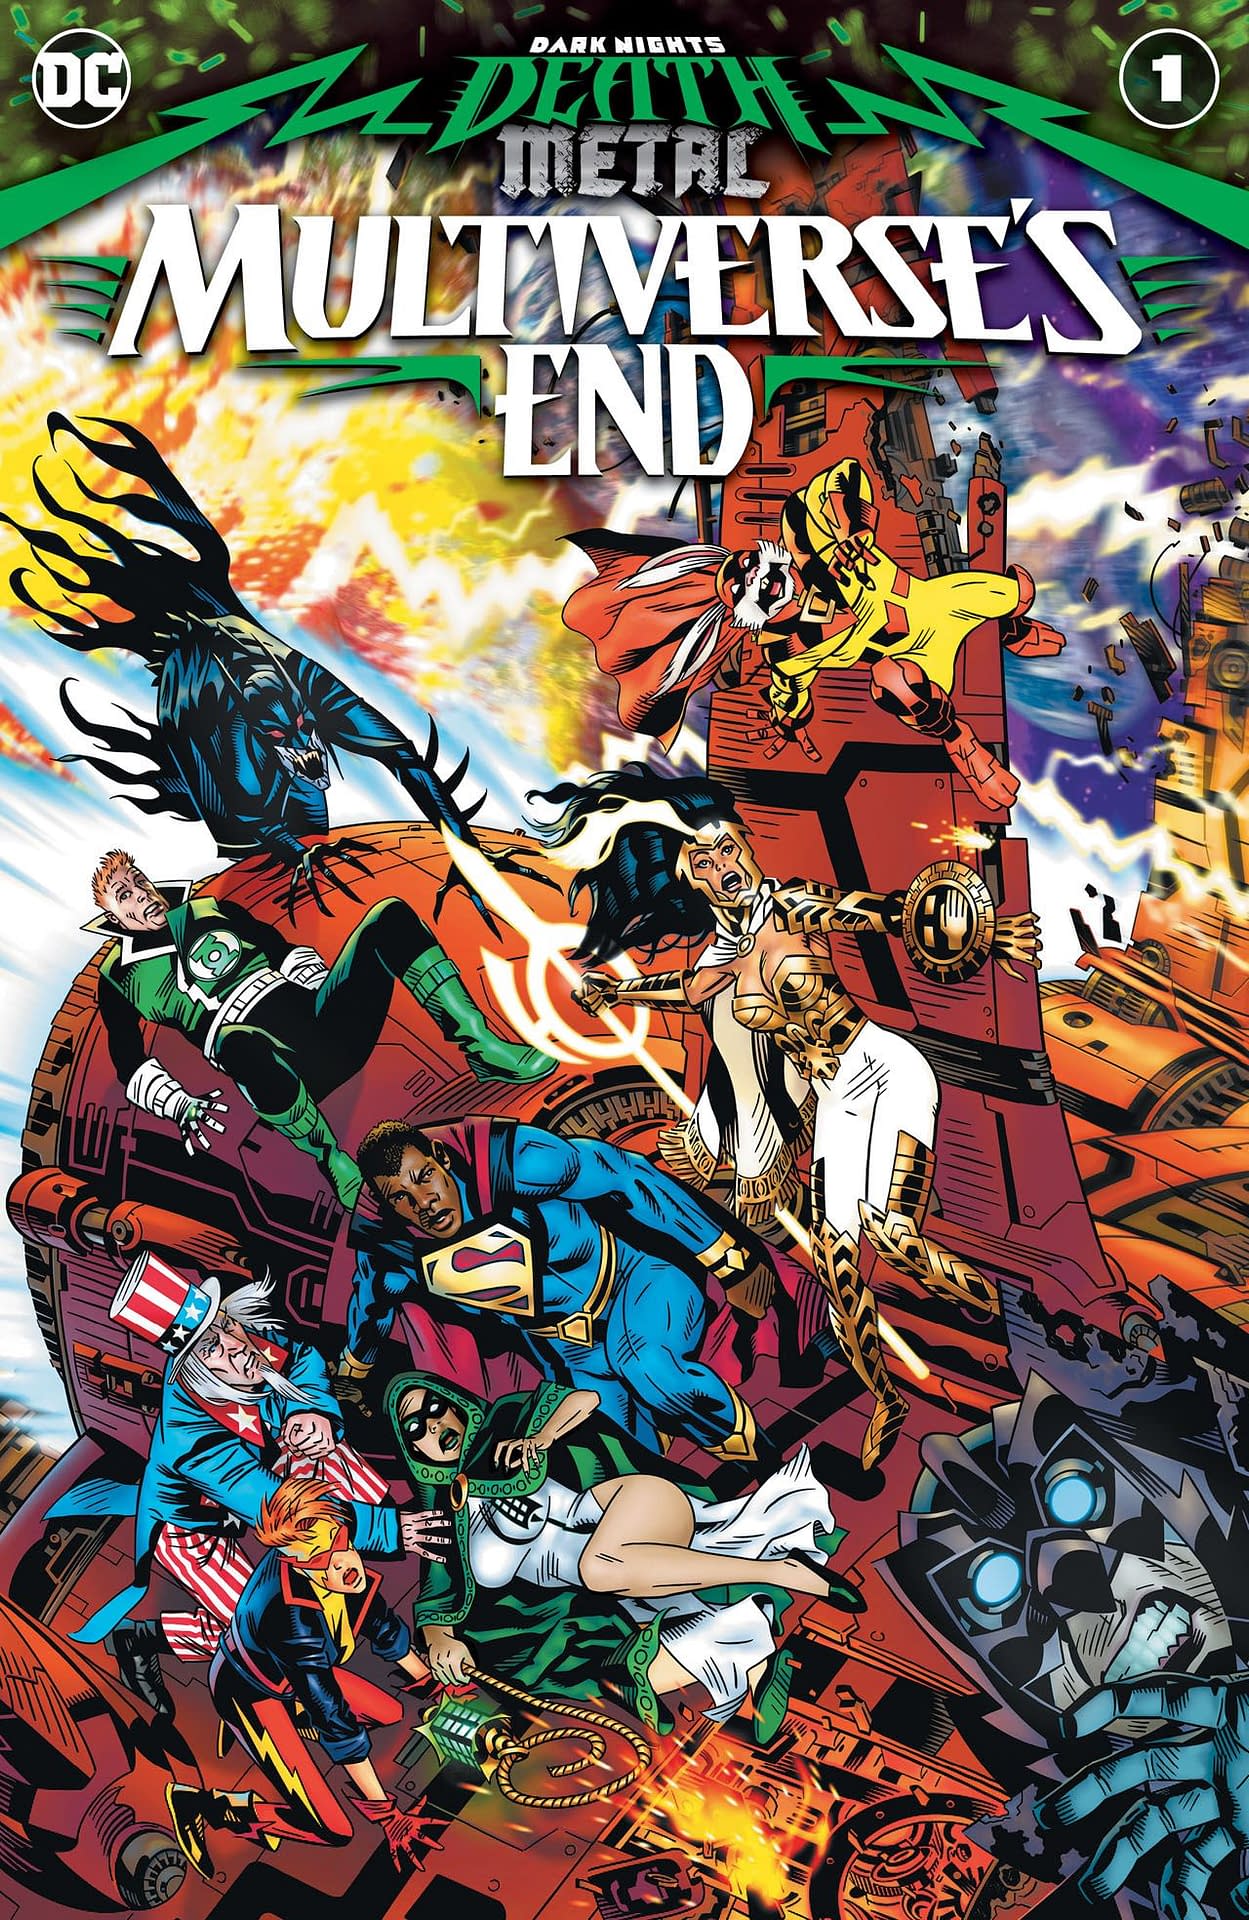 Vtg 1967 DC Comics Teen Titans Issue 9 Big Beach Rumble Robin Kid